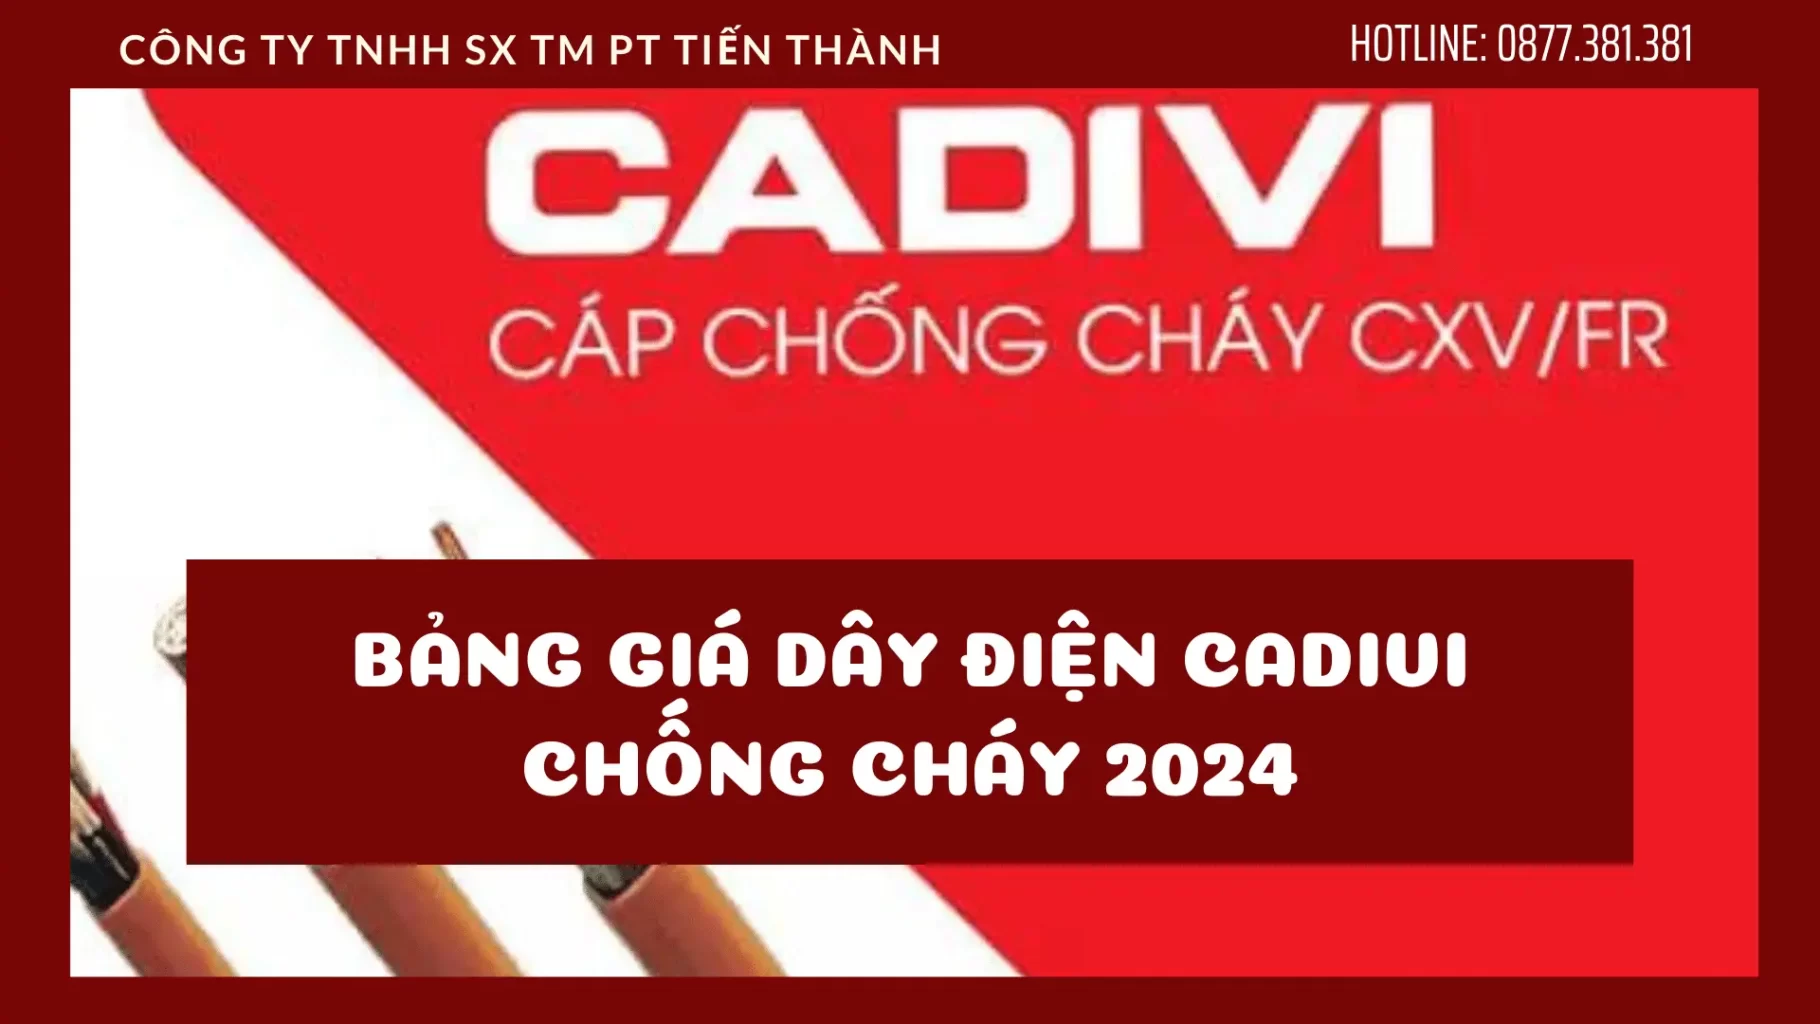 Ứng dụng của dây điện Cadivi 1.5? Cập nhật bảng giá dây điện Cadivi 1.5 mới nhất 2022